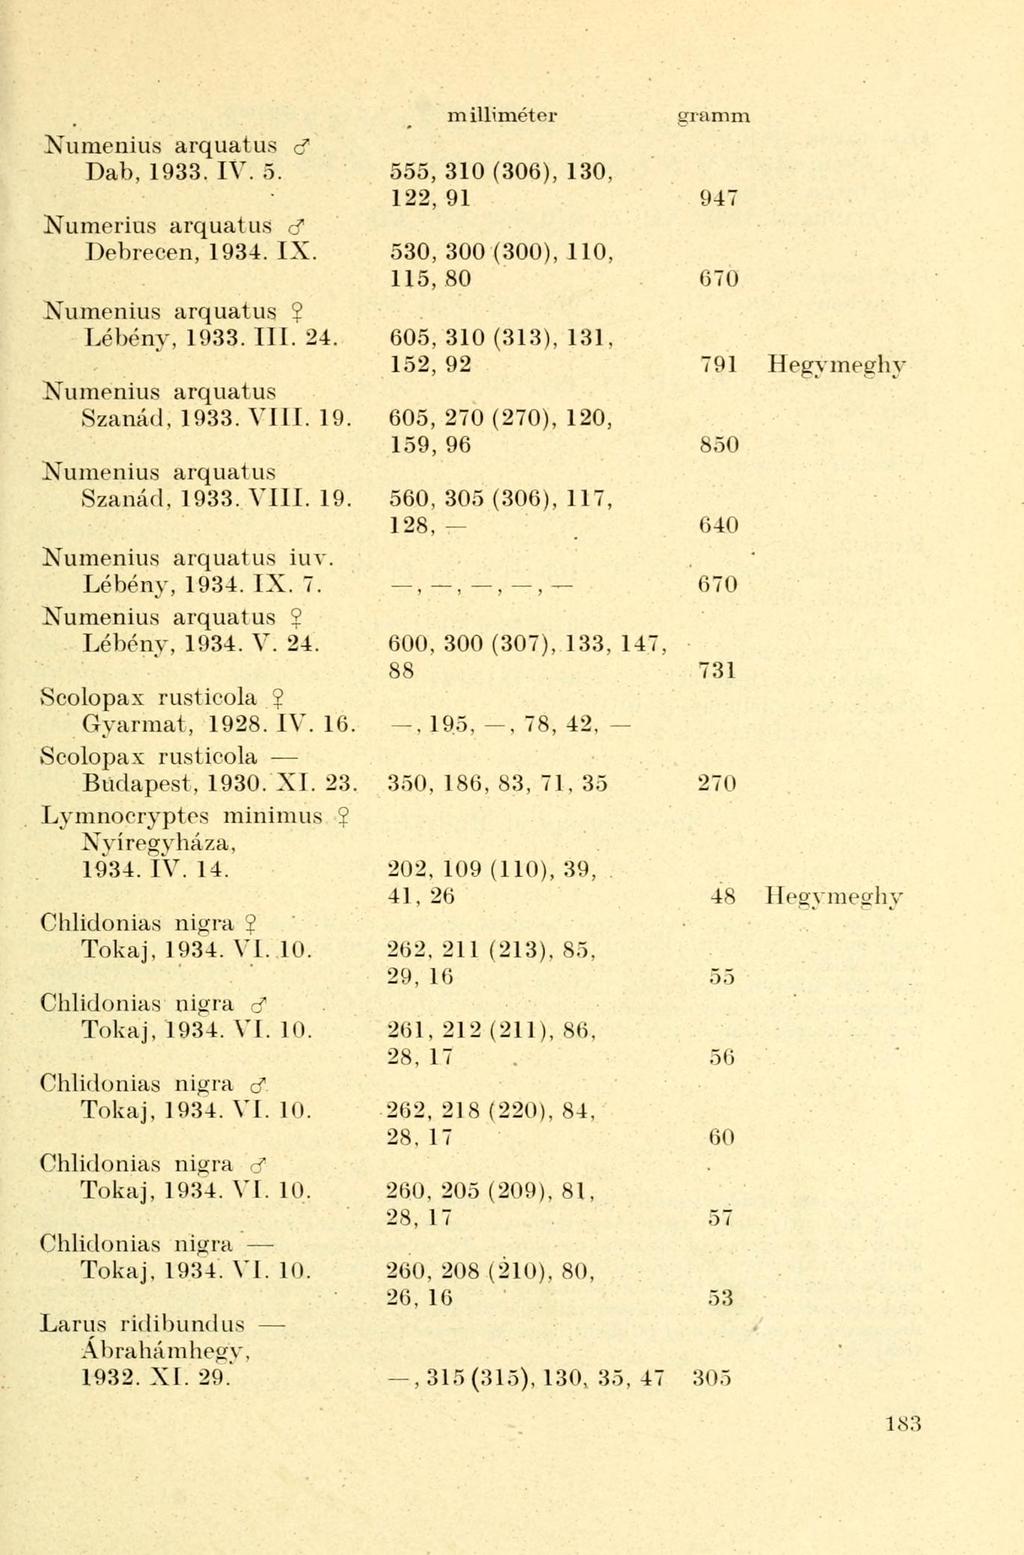 Numenius arquatus d Dab, 1933. IV. 5. Numerius arquatus d Debrecen, 1934. IX. Numenius arquatus 2 Lébény, 1933. III. 24. Numenius arquatus Szanád, 1933. VIII. 19. Numenius arquatus Szanád, 1933. VIII. 19. Numenius arquatus iuv.